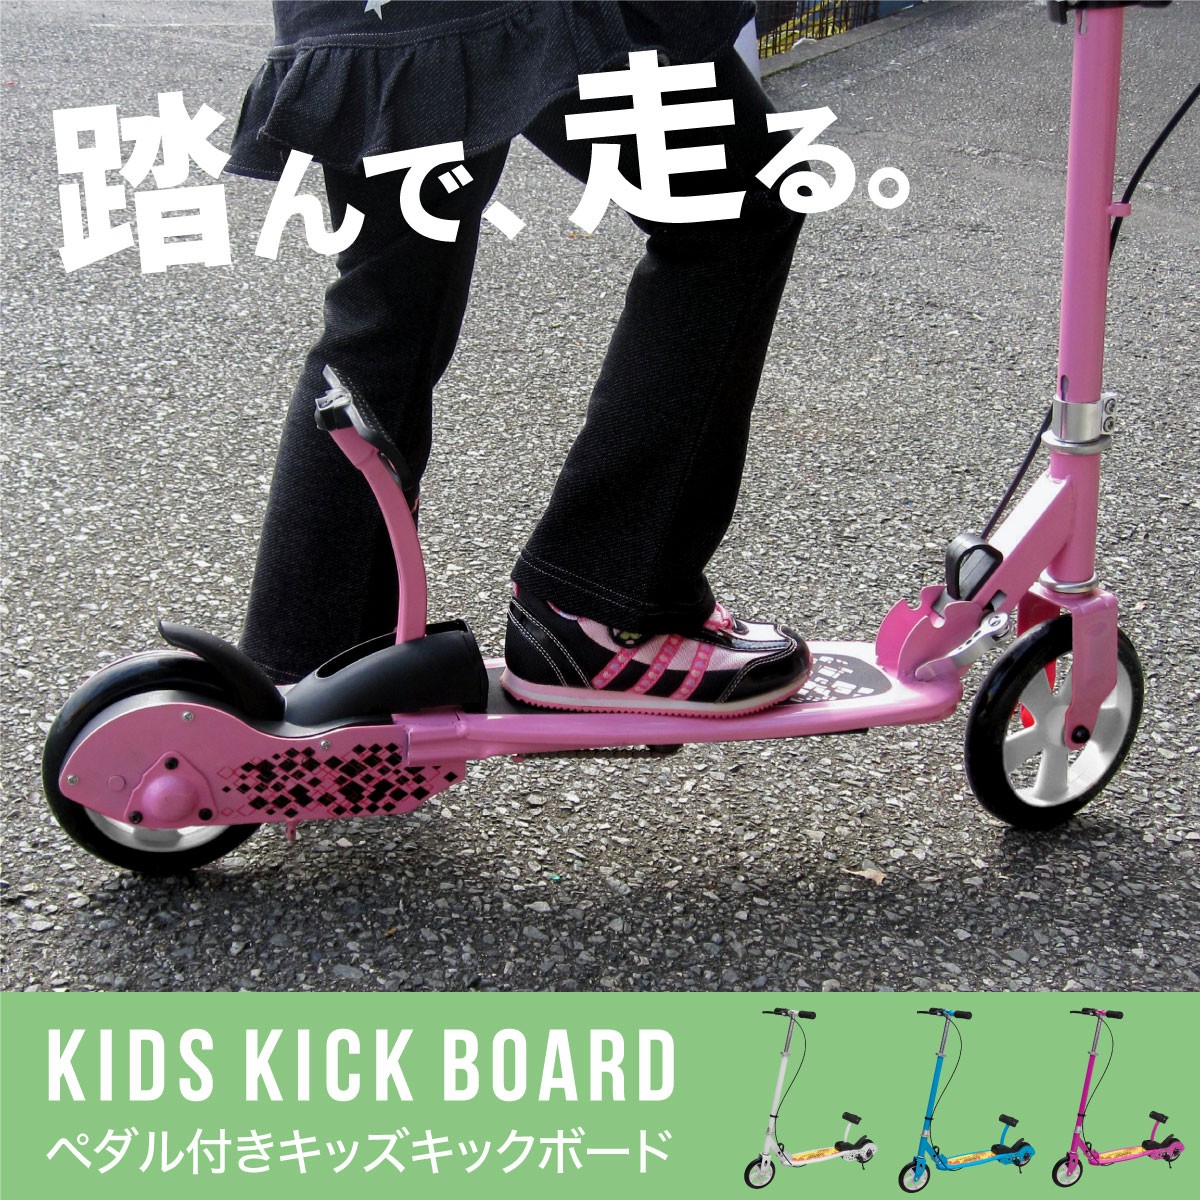 キックボード 子供用 ペダル スタンド ブレーキ付き 折りたたみ 3色 キックスケーター ピンク 青 白 対応  :shige-board:インポート直販Ks問屋 通販 